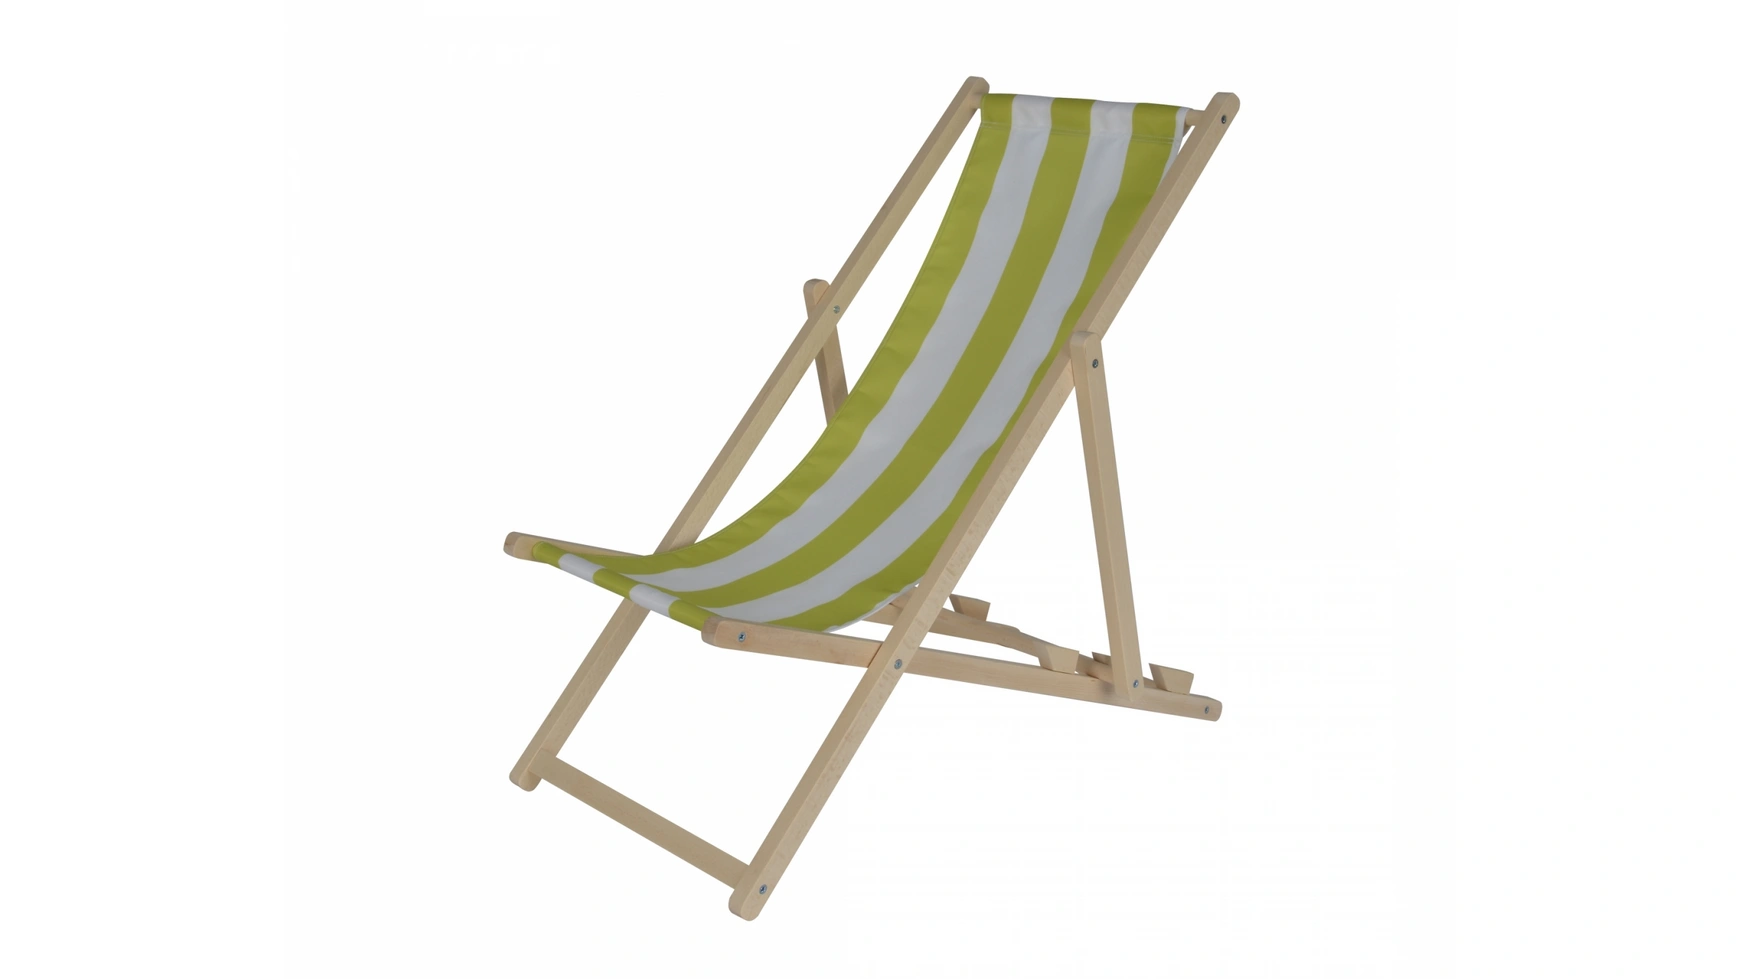 шезлонг с тканью складной шезлонг пляжный шезлонг стул на дачу Eichhorn Садовый детский шезлонг